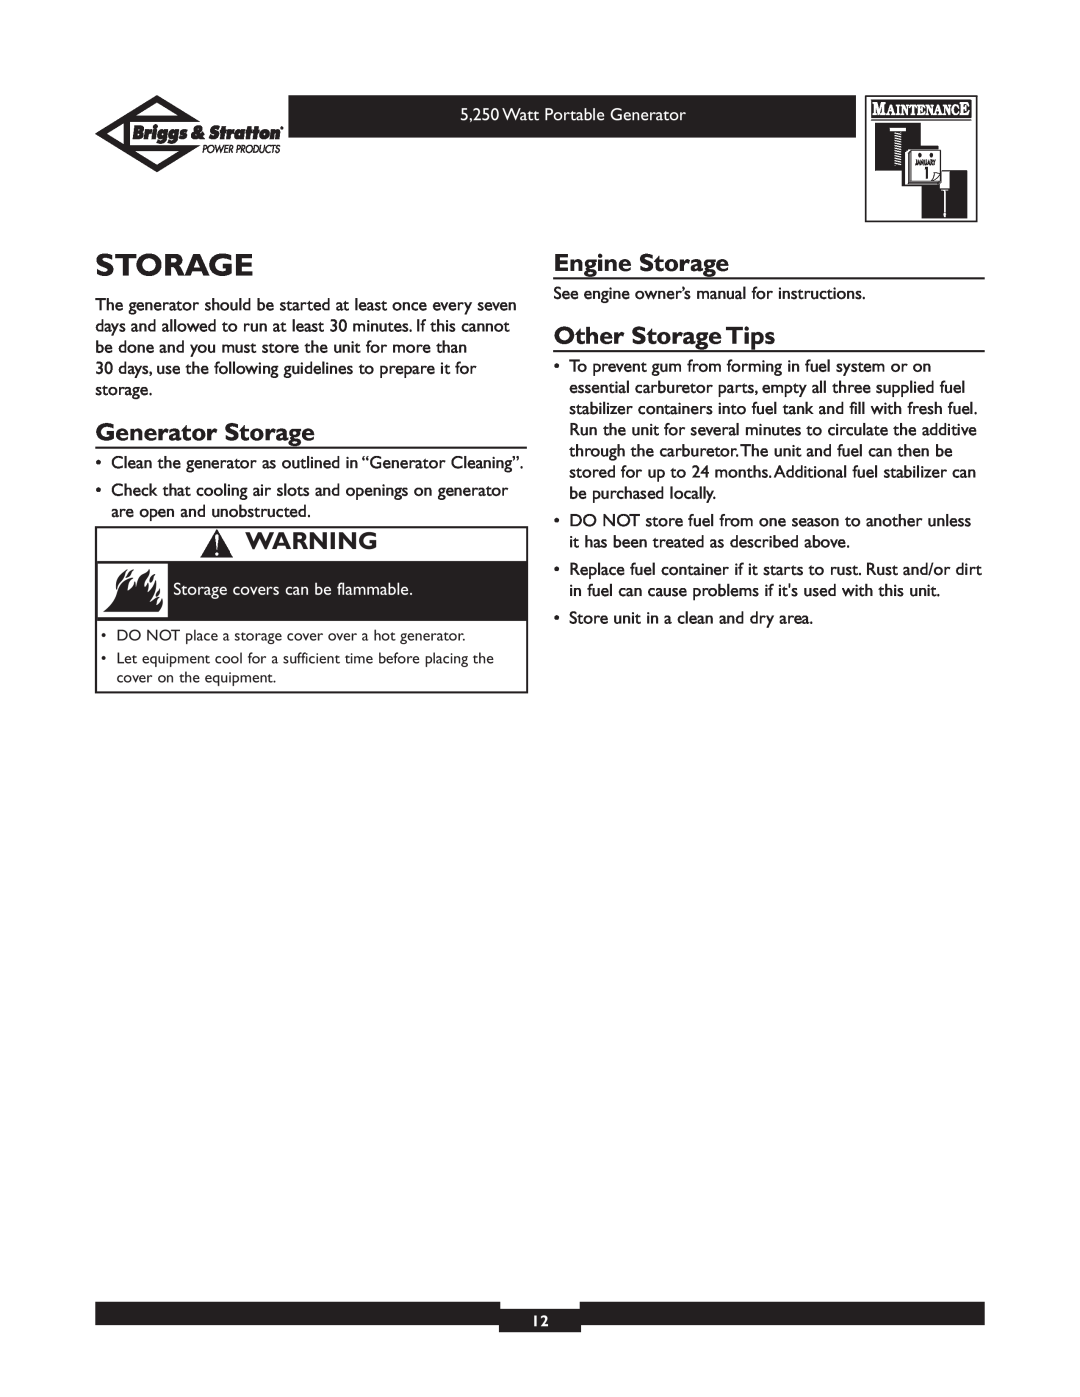 Briggs & Stratton 30204 owner manual Generator Storage, Engine Storage, Other Storage Tips 